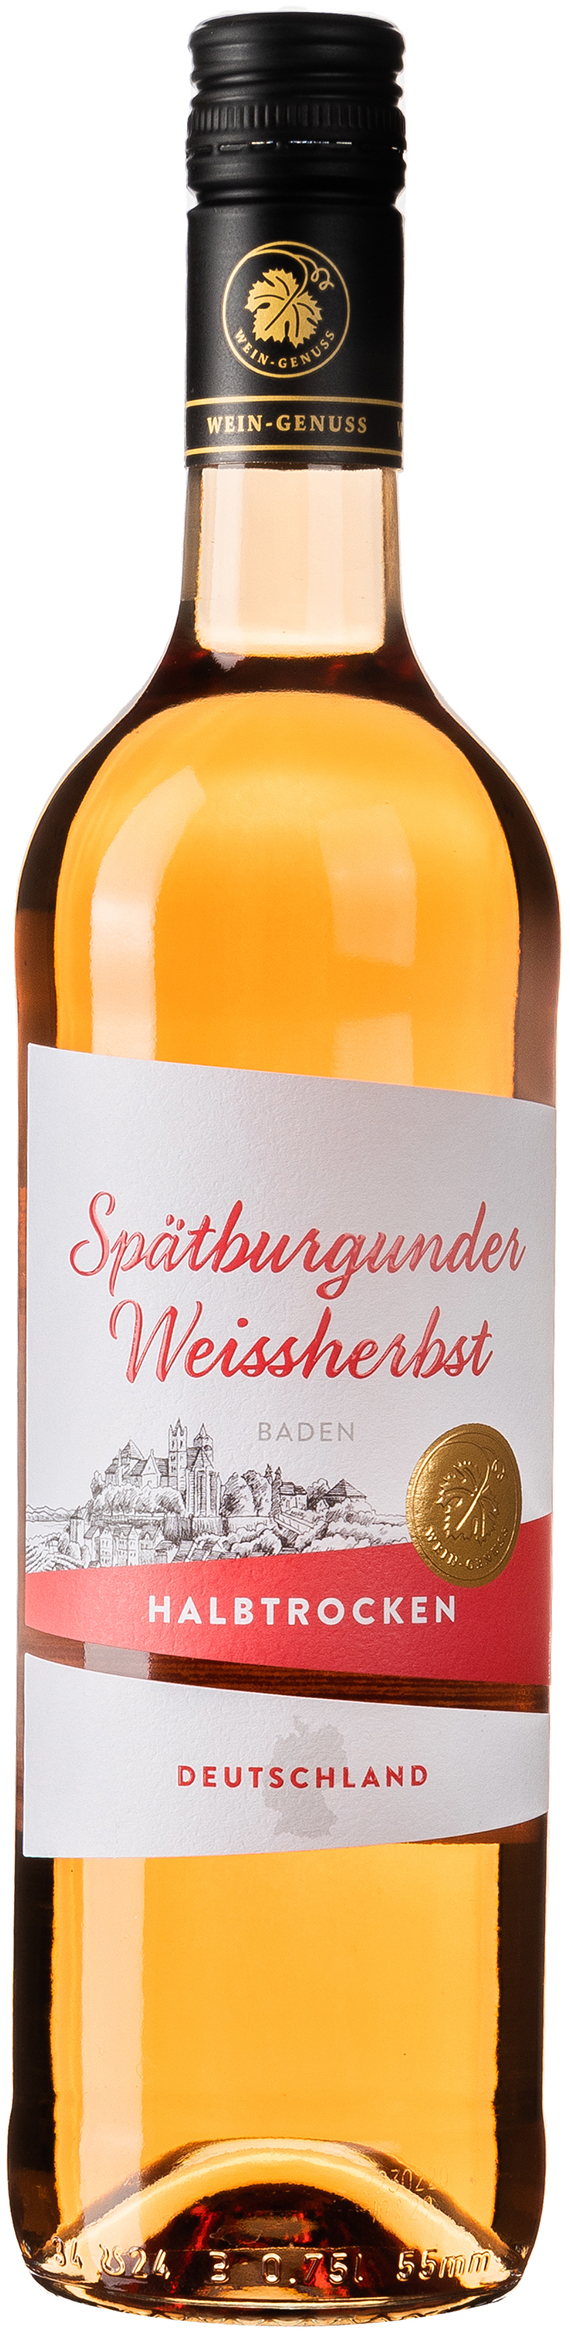 Wein-Genuss Baden Spätburgunder Weissherbst halbtrocken 12% vol. 0,75L 